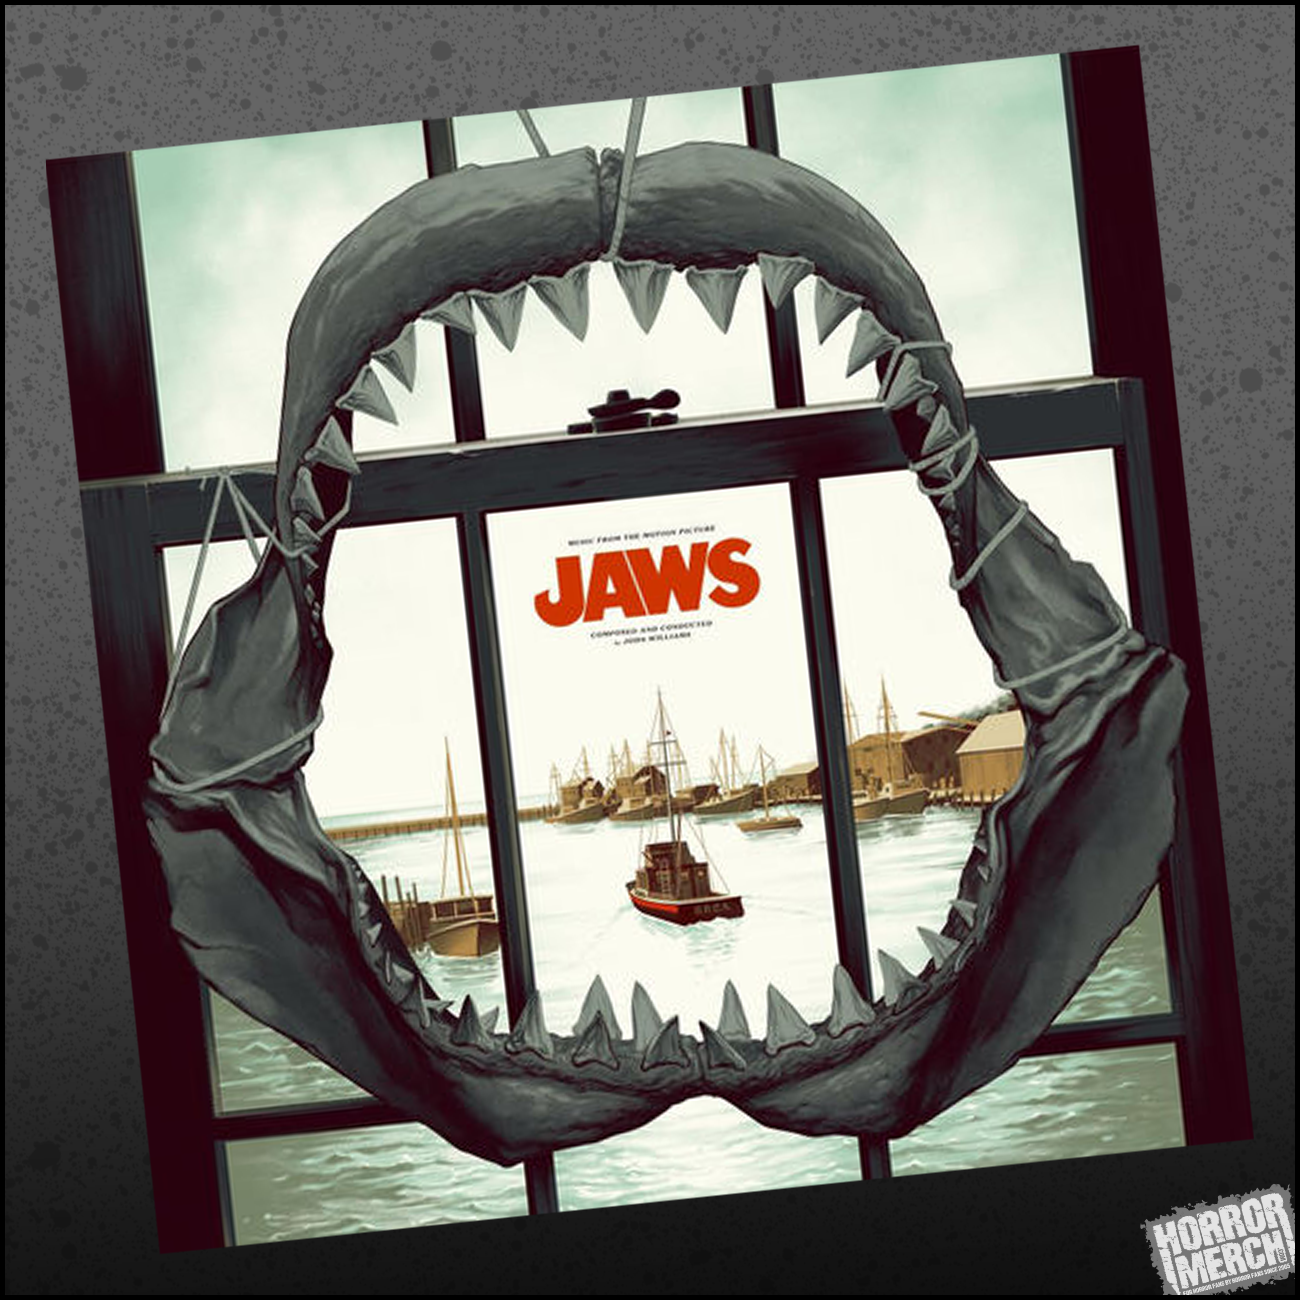 træfning Mindre end Mange Jaws [Soundtrack] - Free Shipping! – Horrormerch.com